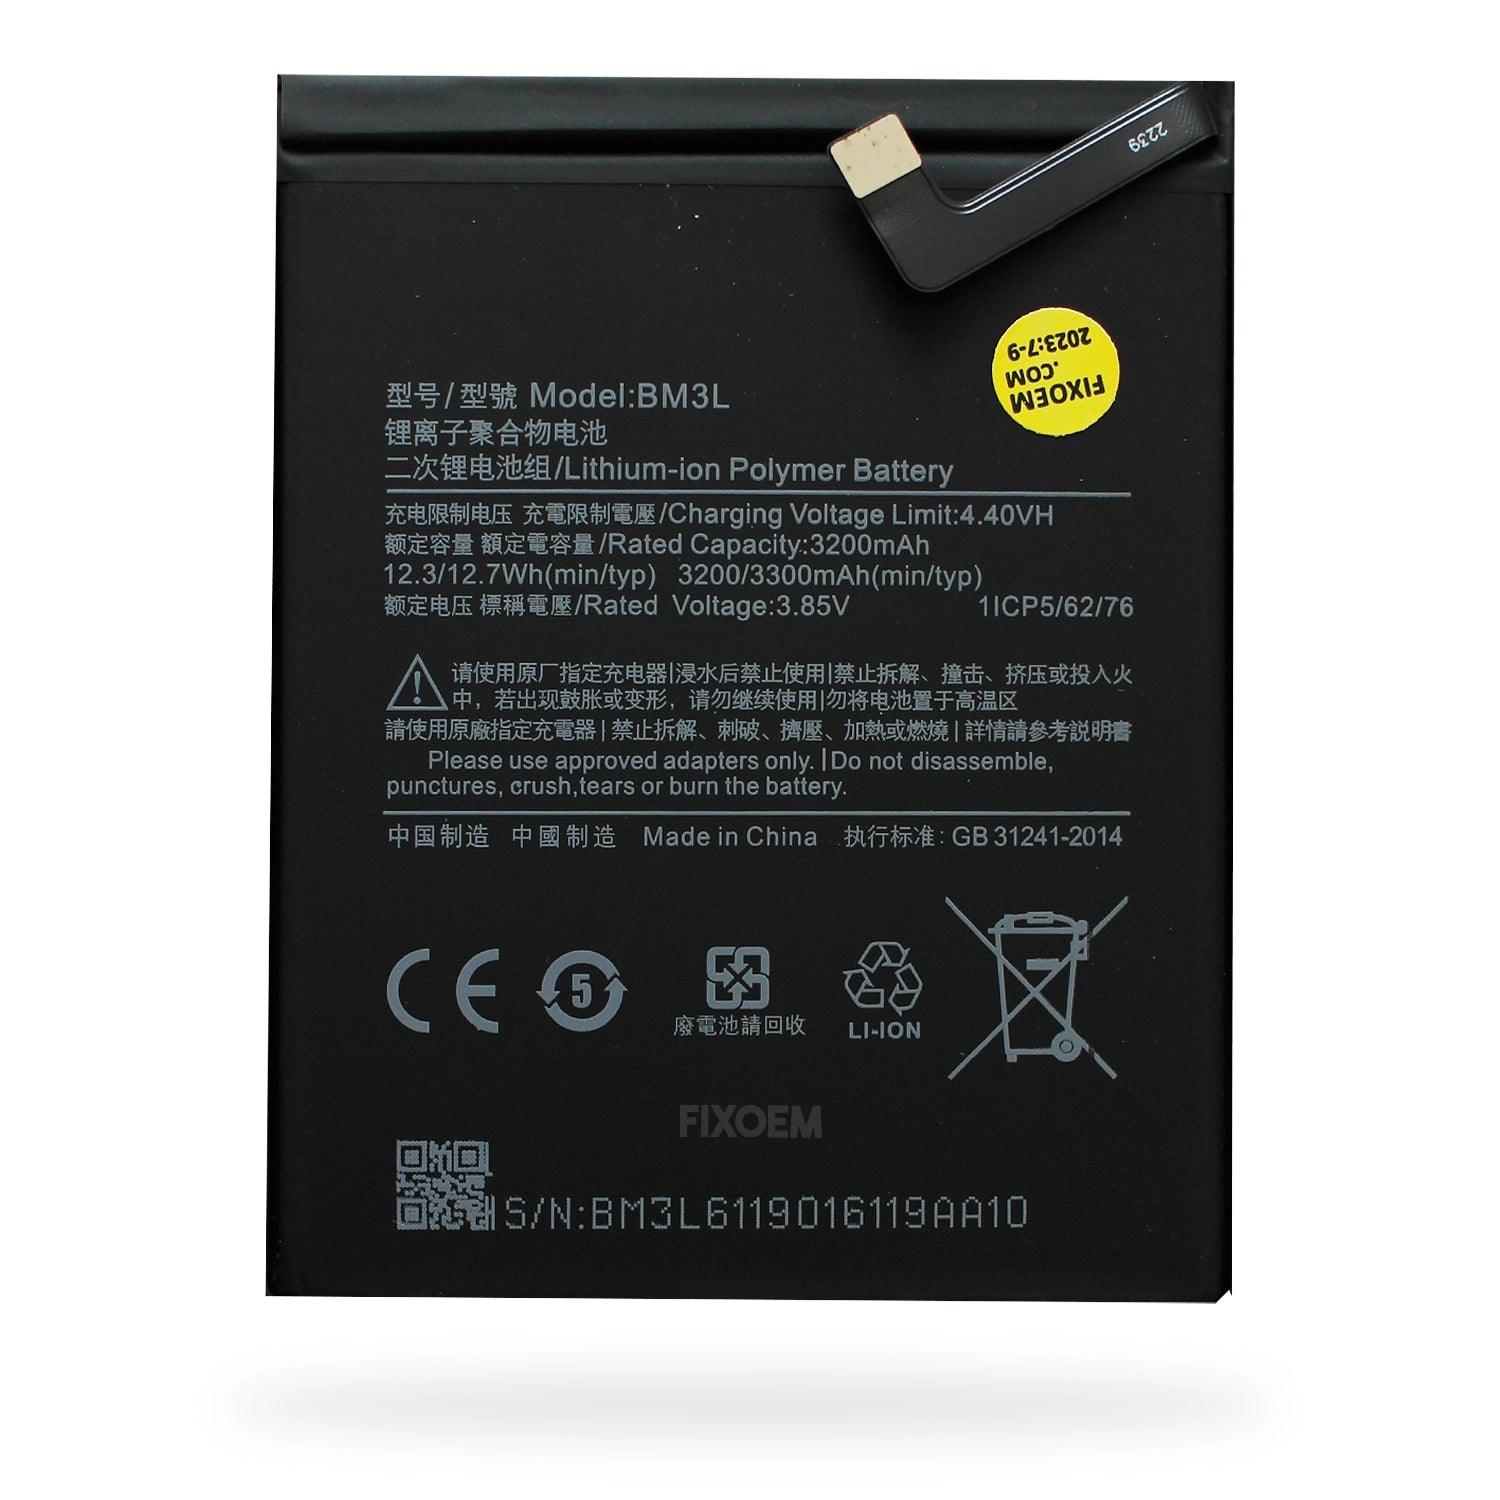 Bateria Xiaomi 9 / Mi 9 / M9 M1902f1g Bm3L a solo $ 120.00 Refaccion y puestos celulares, refurbish y microelectronica.- FixOEM